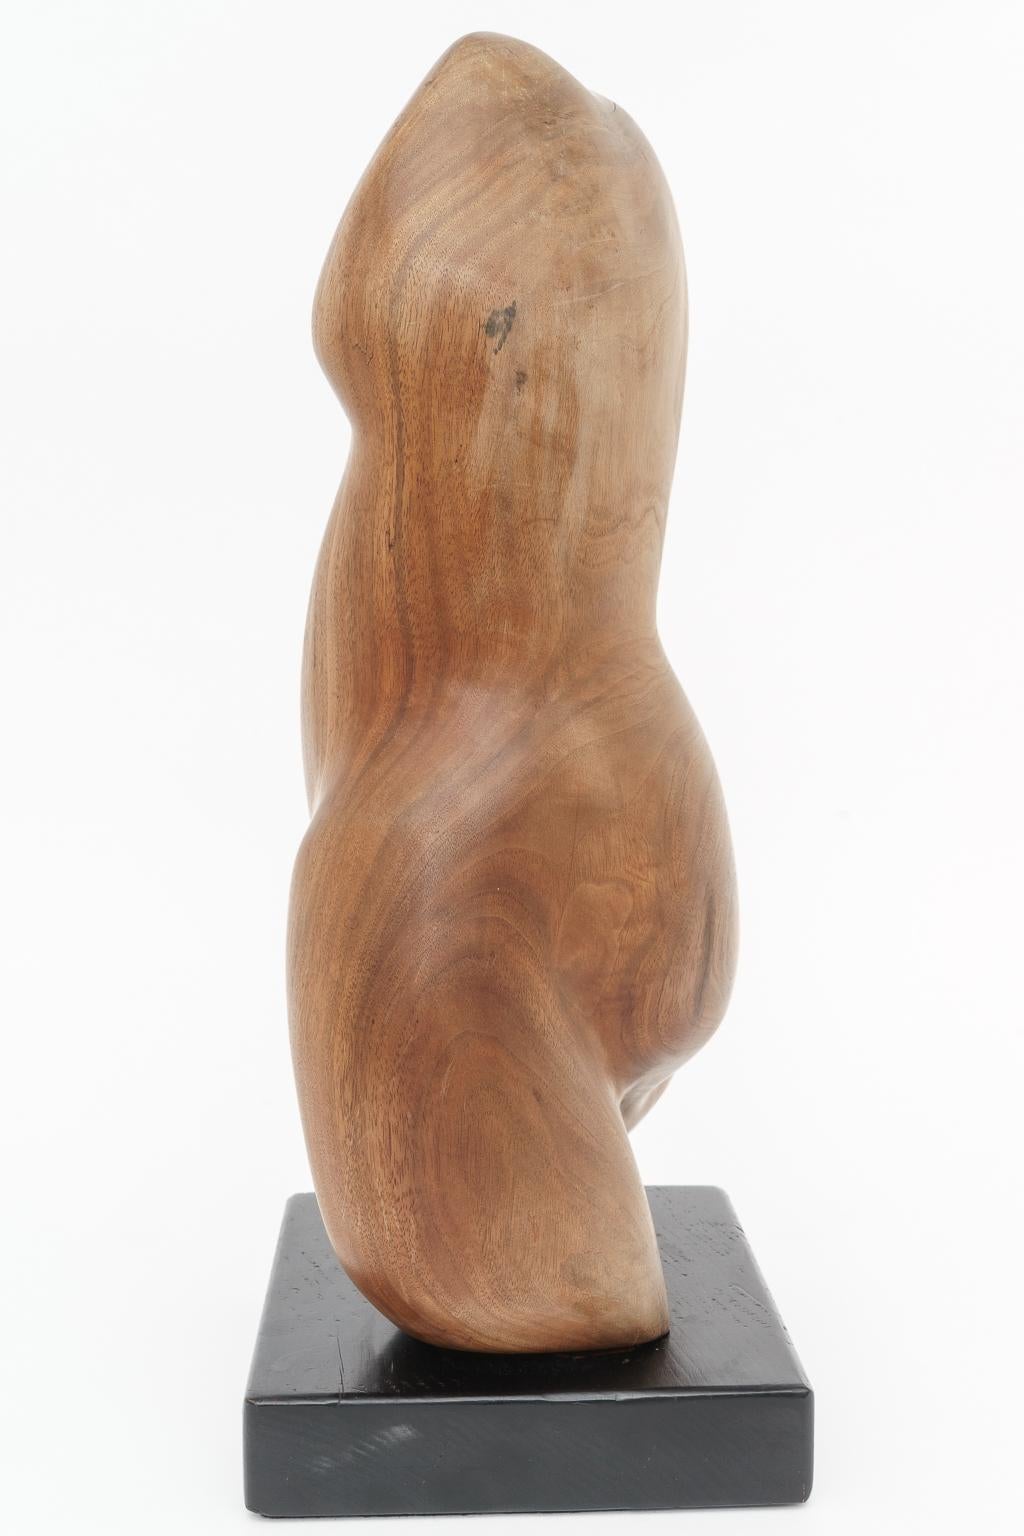 artisanal wooden torsos